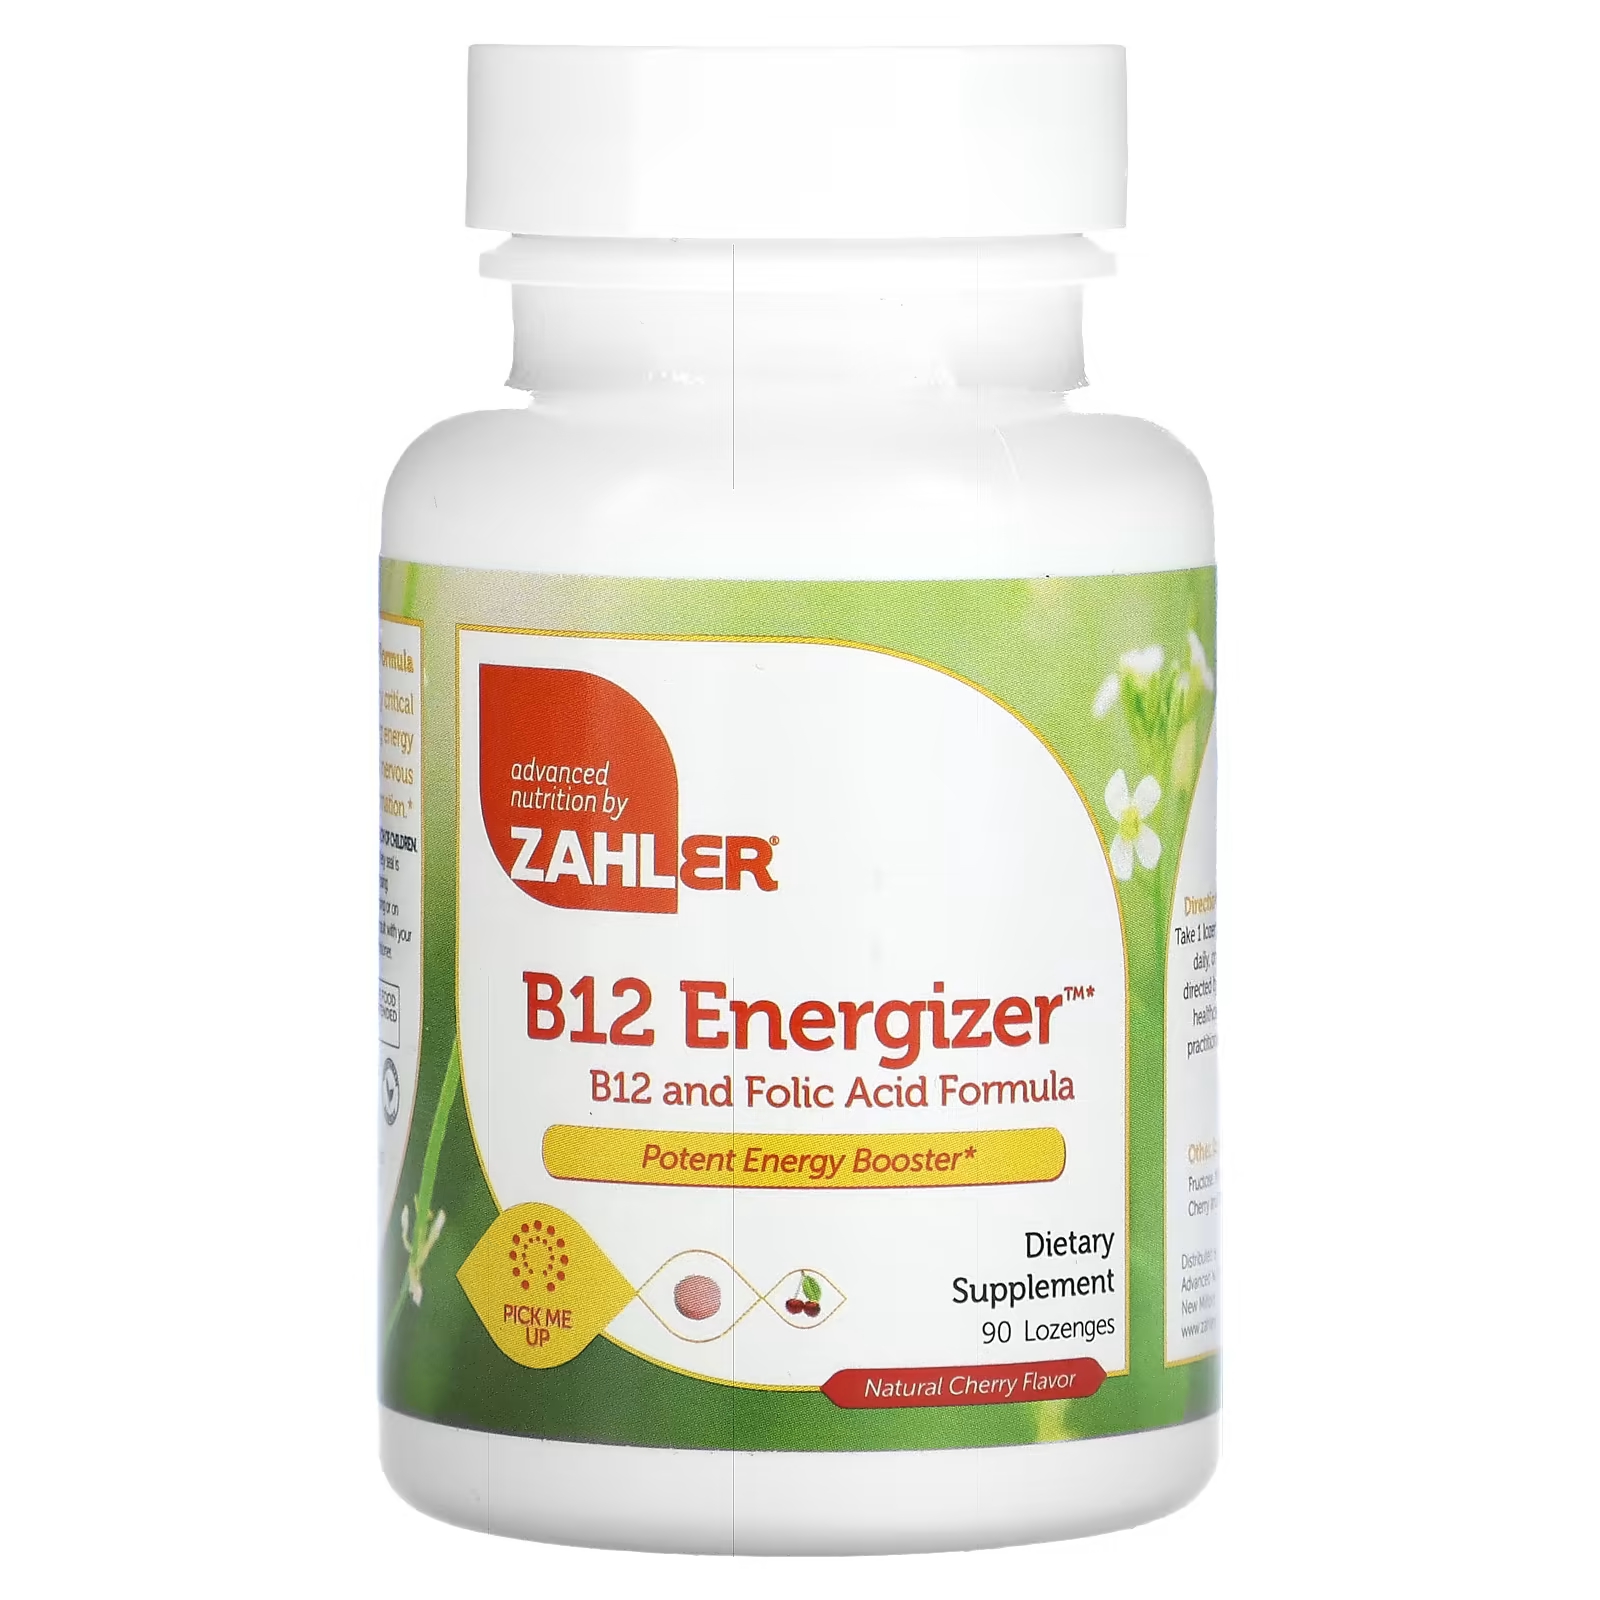 Витамин B12 и фолиевая кислота Zahler B12 Energizer с натуральным вишневым вкусом, 90 пастилок пищевая добавка zahler b12 energizer b12 и формула фолиевой кислоты с натуральной вишней 360 пастилок